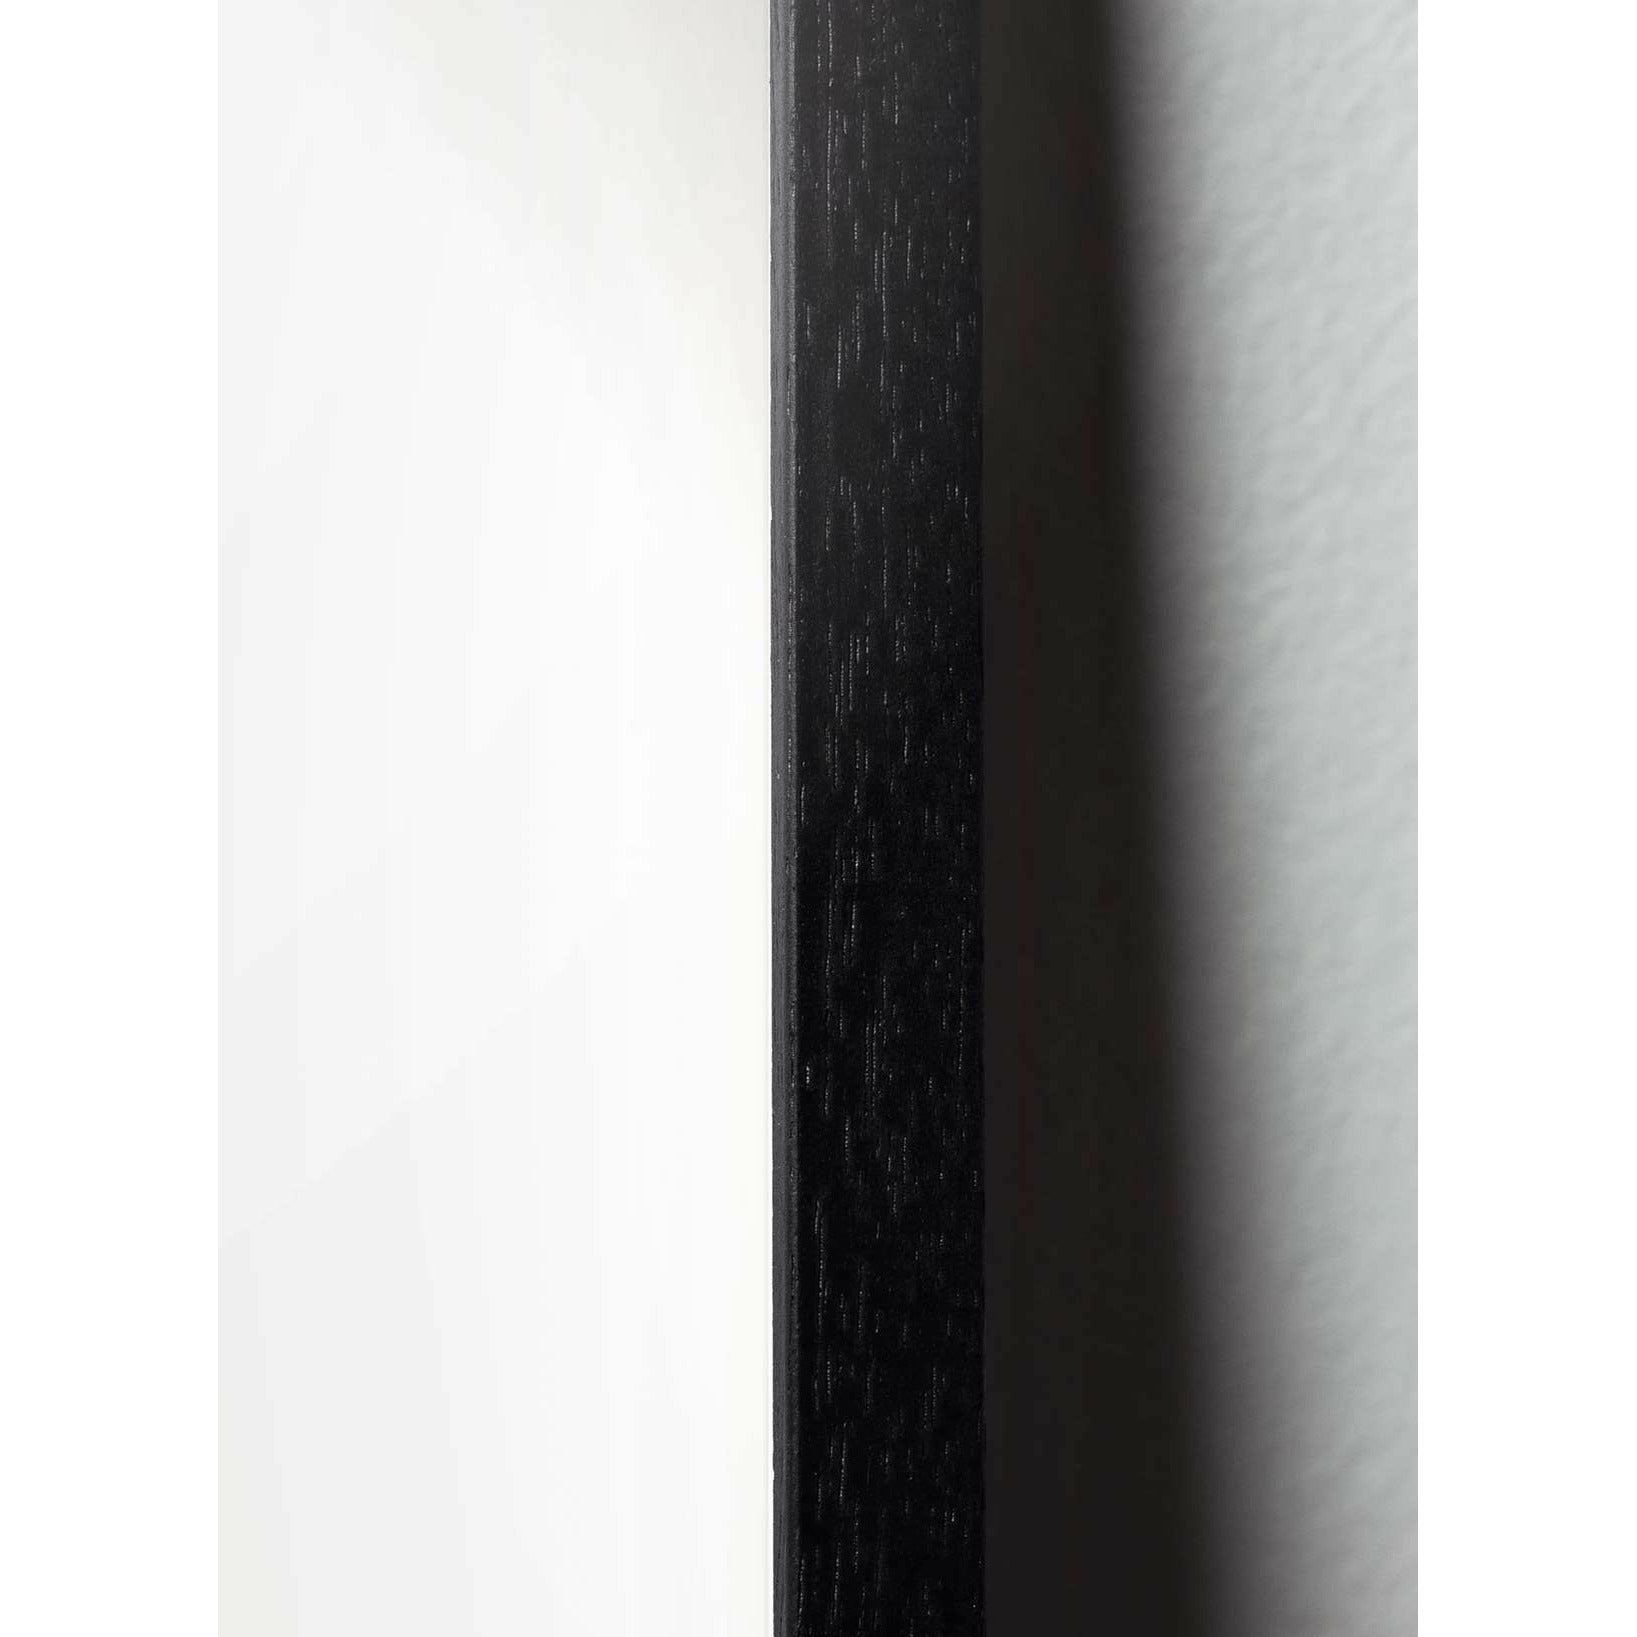 Brainchild Ägglinjeffisch, ram i svart målat trä 70x100 cm, vit bakgrund